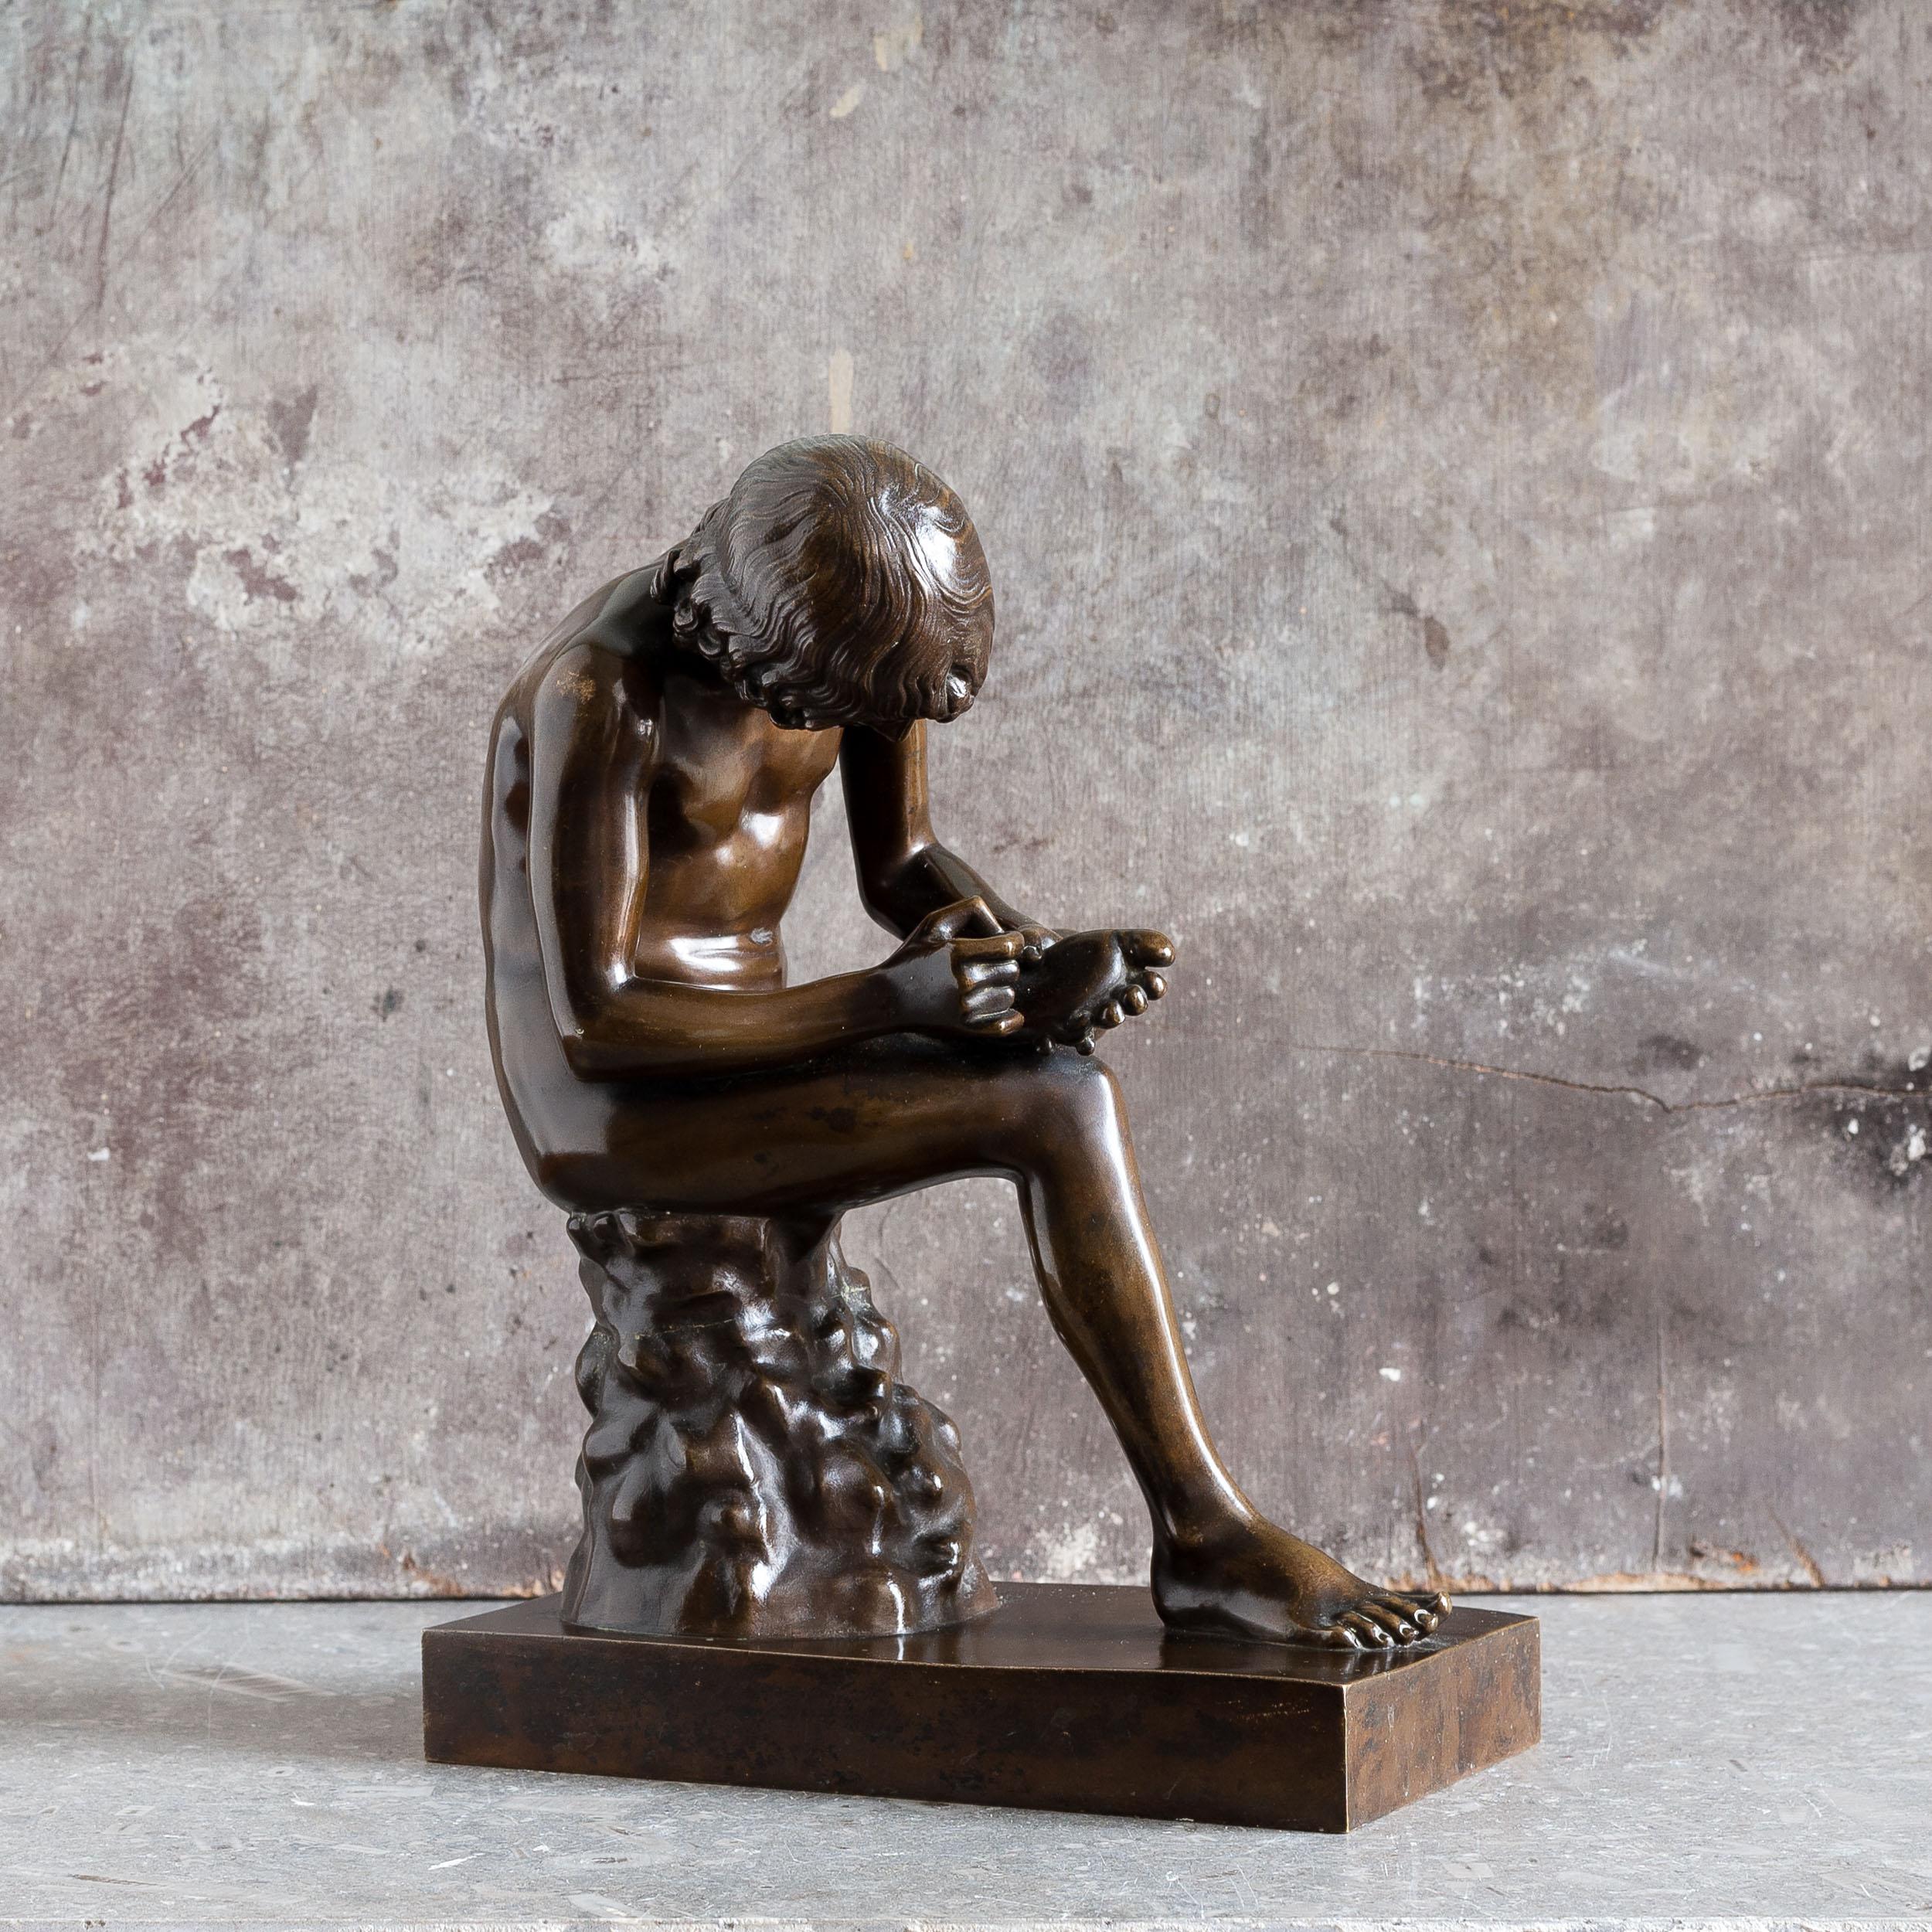 Modèle de Spinario en bronze français du milieu du XIXe siècle, coulé par la célèbre fonderie Barbedienne, d'après l'antique, avec cachet sur la base.

Cette sculpture est une copie française du XIXe siècle du 